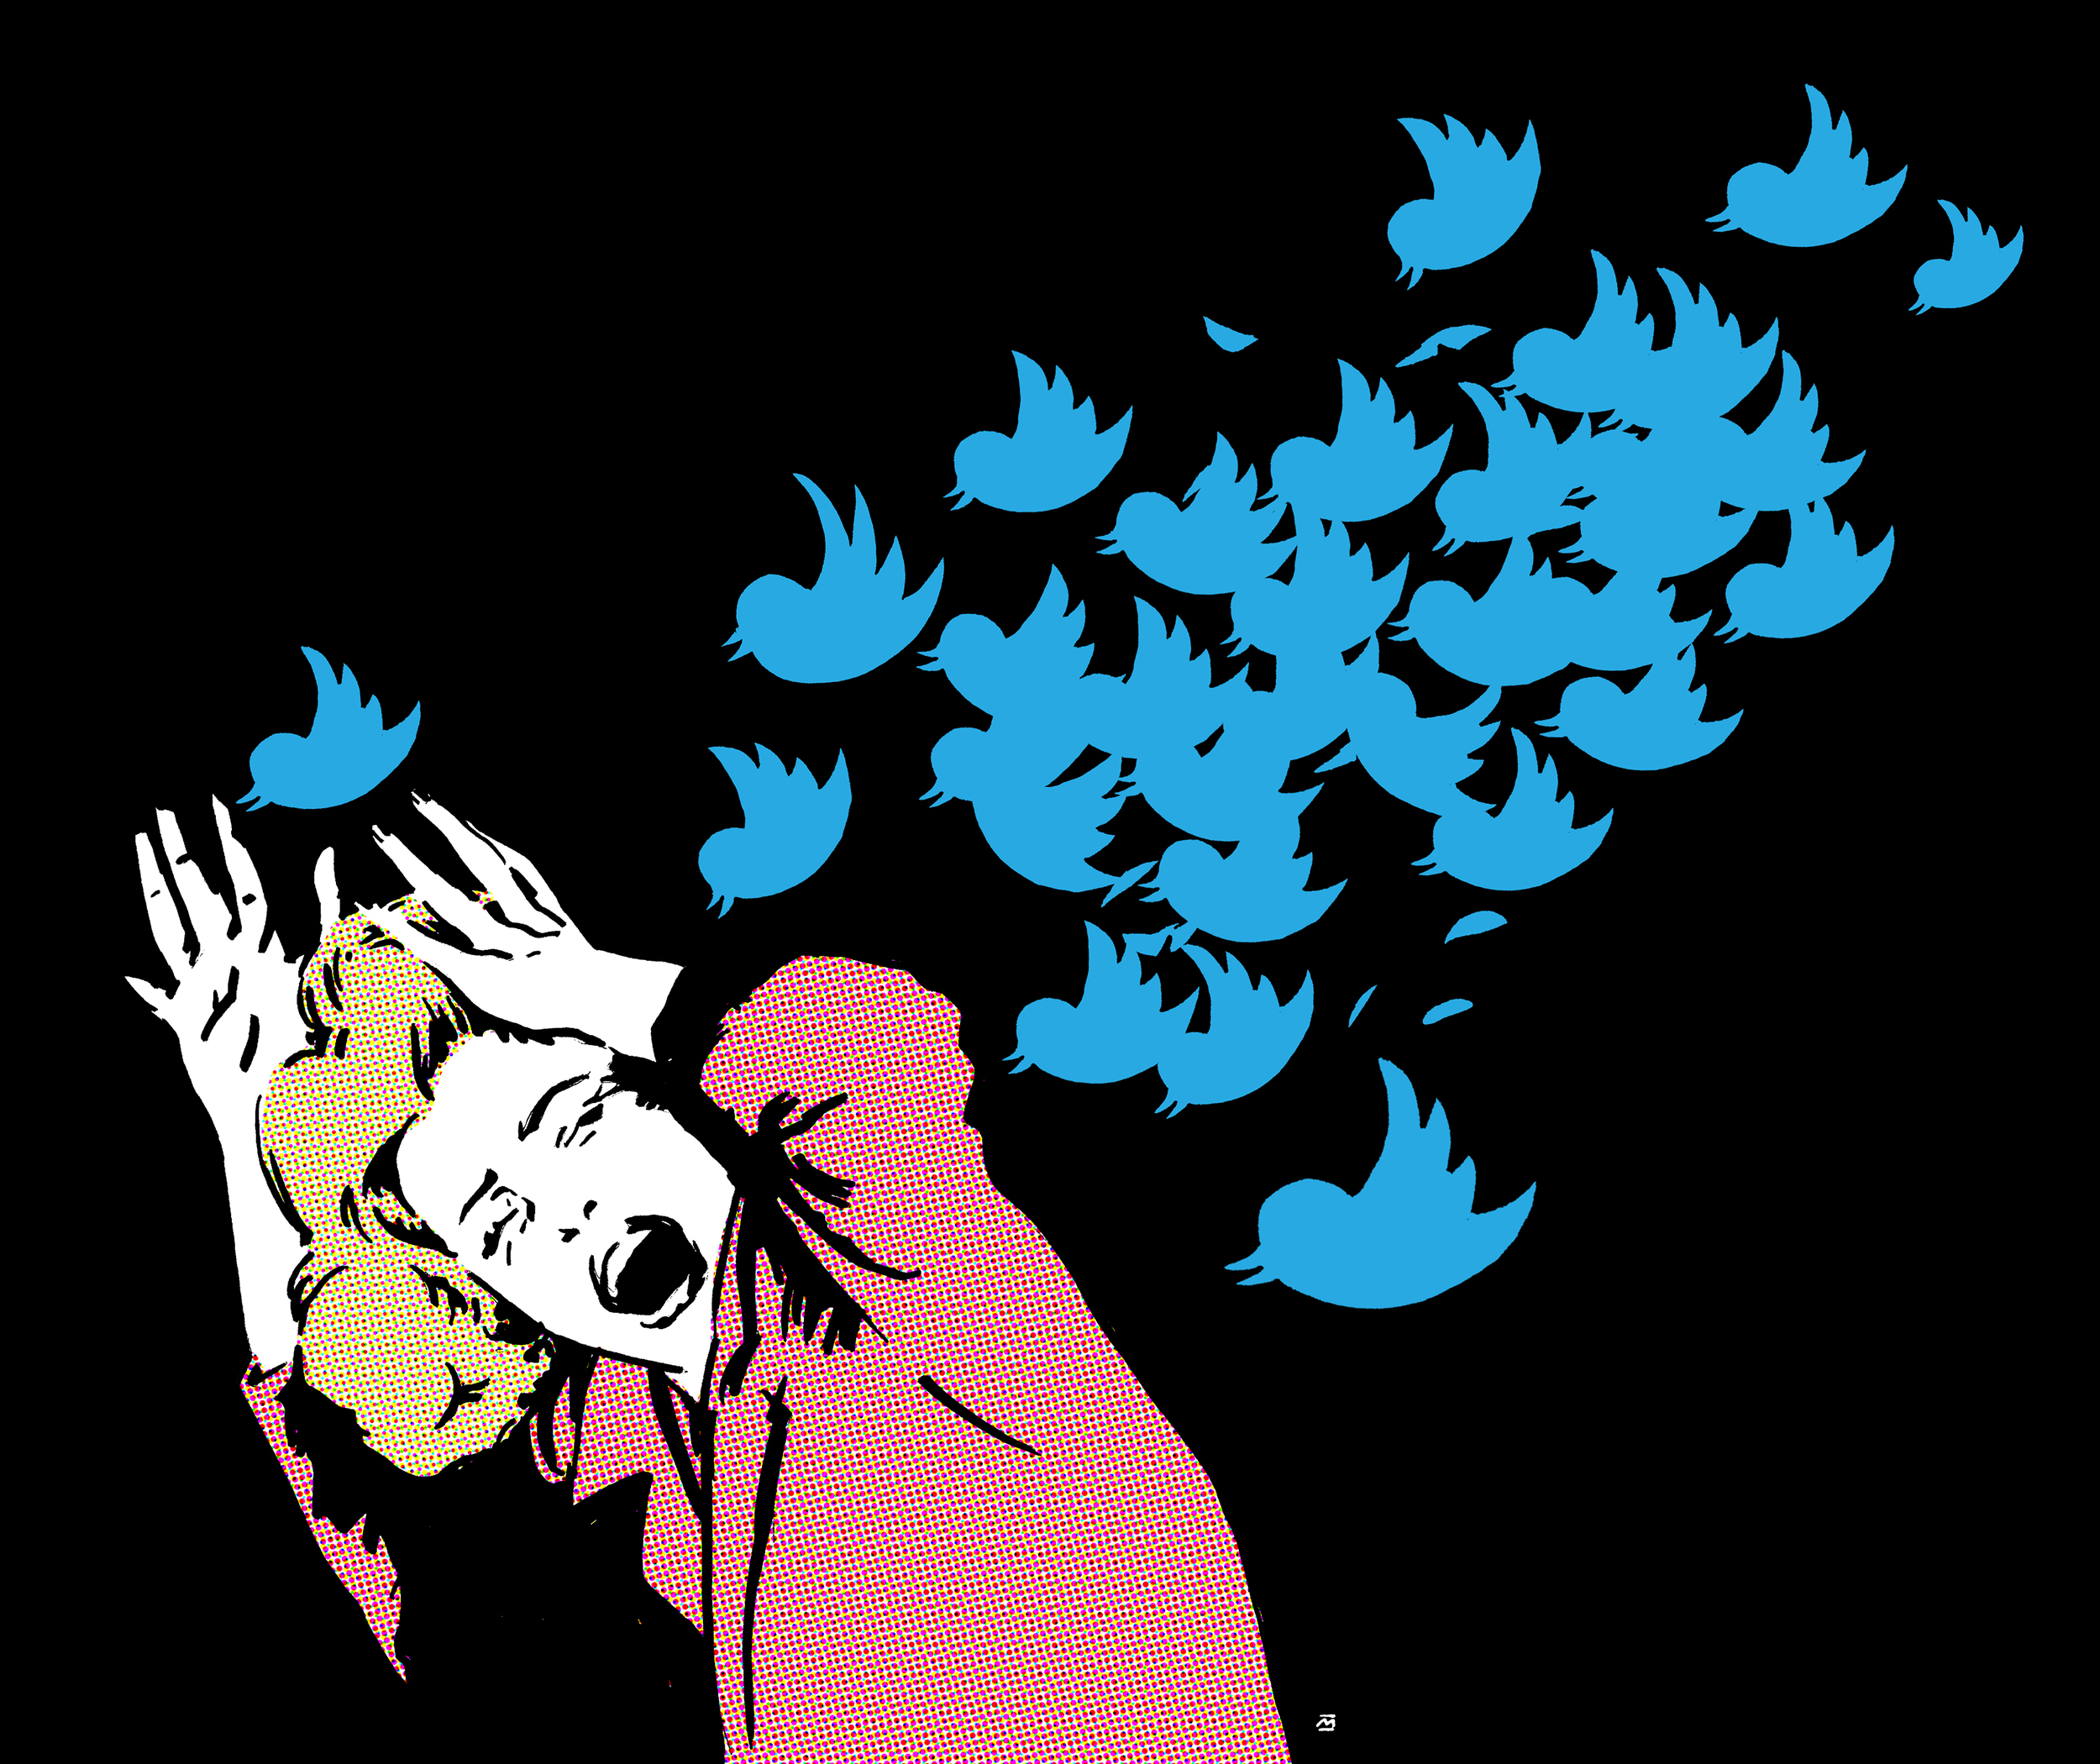 Twittermobbing / Harassment on Twitter